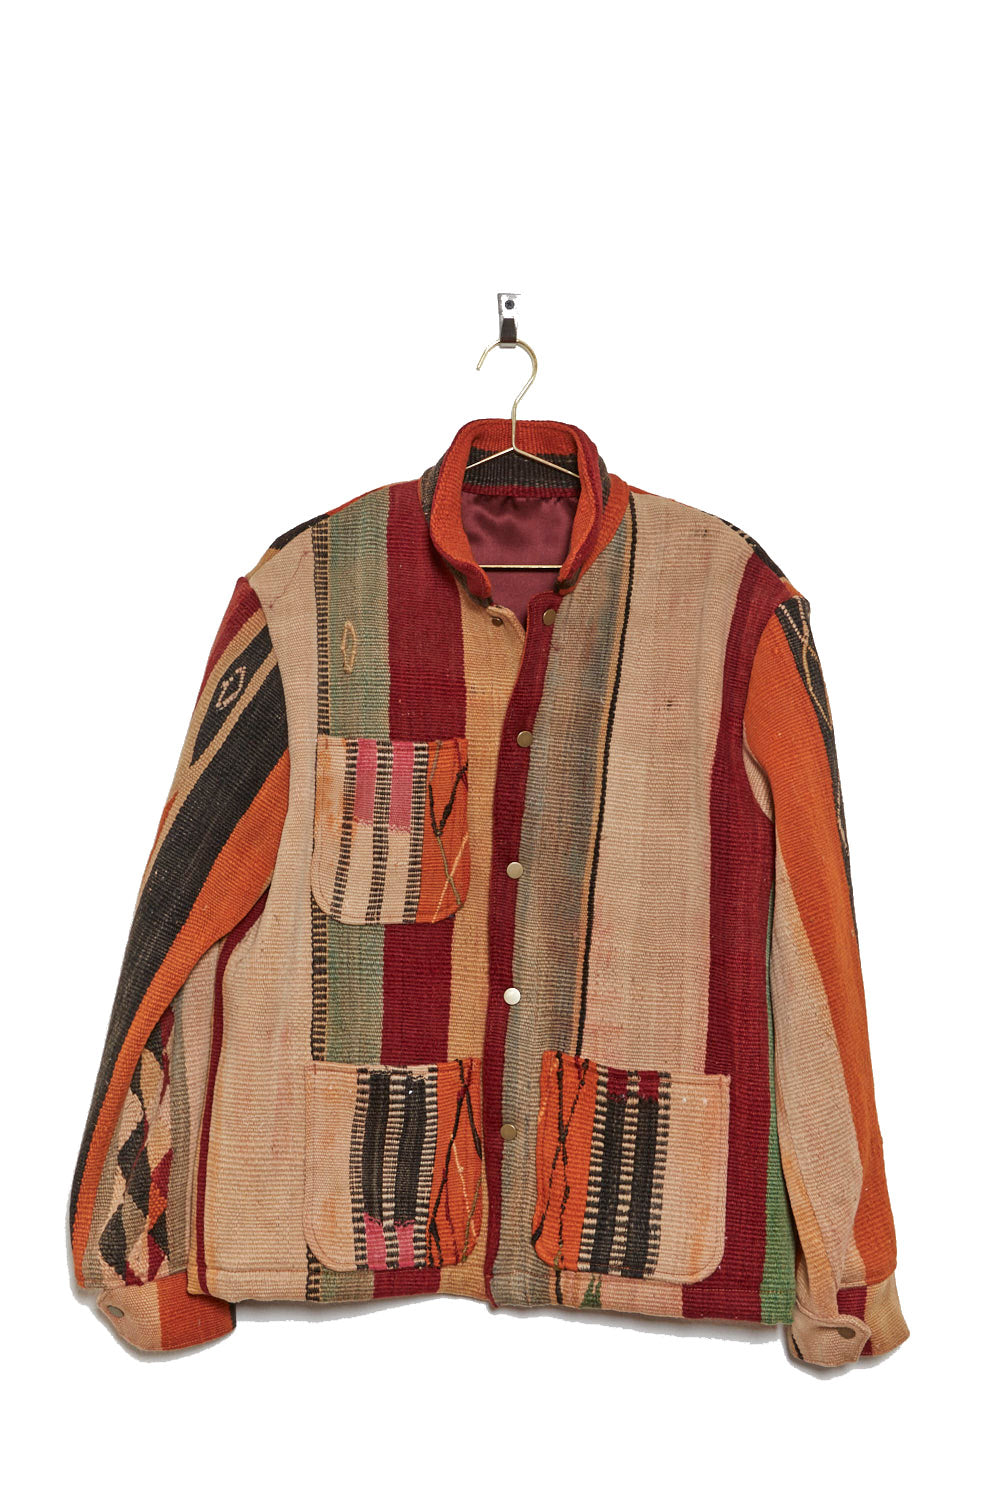 Afghan Kilim Chore Coat - Size Large